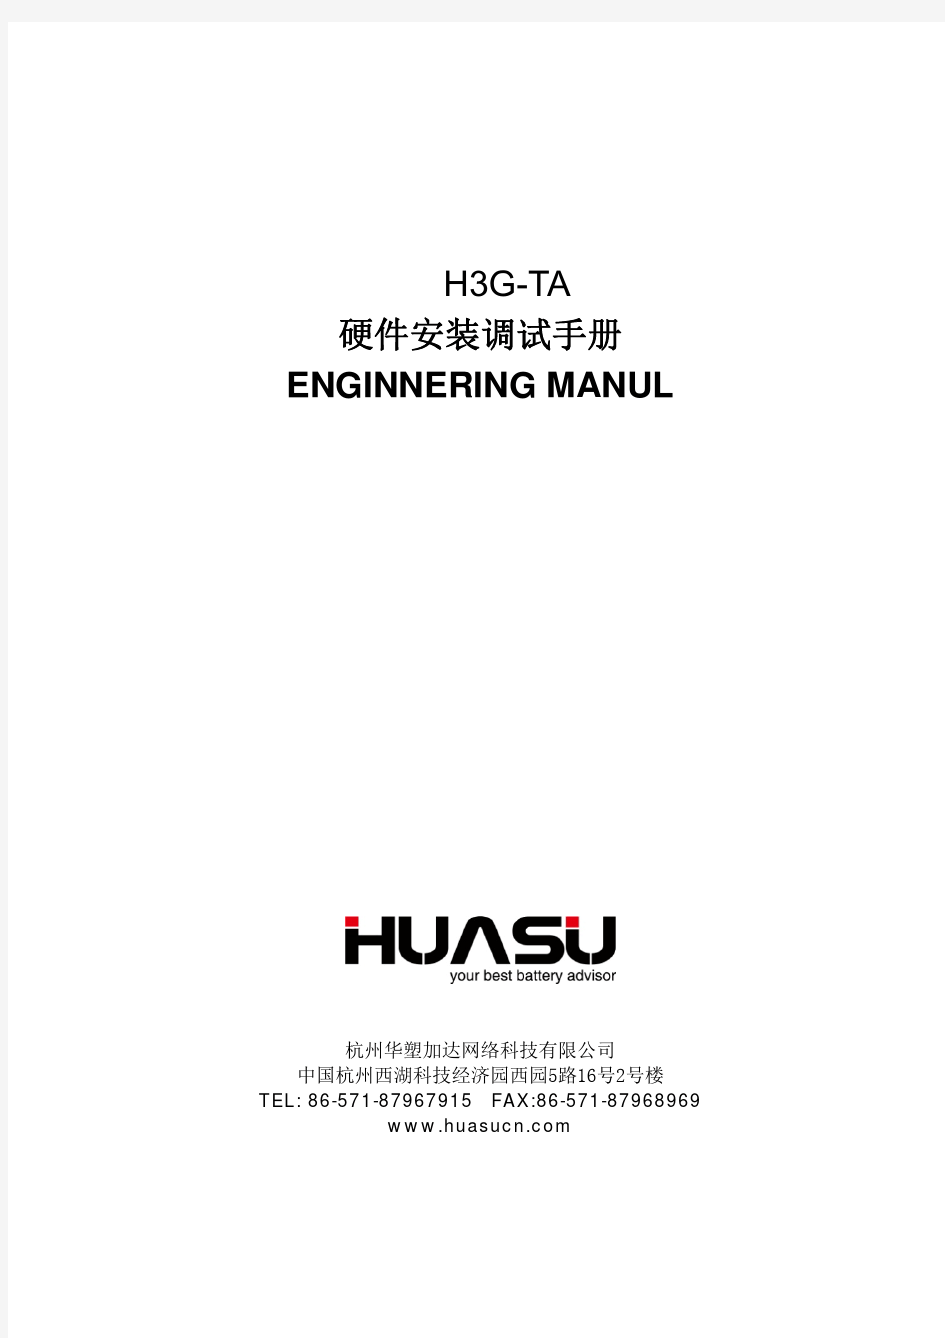 H3G-TA硬件安装调试手册A6版(对外公开)